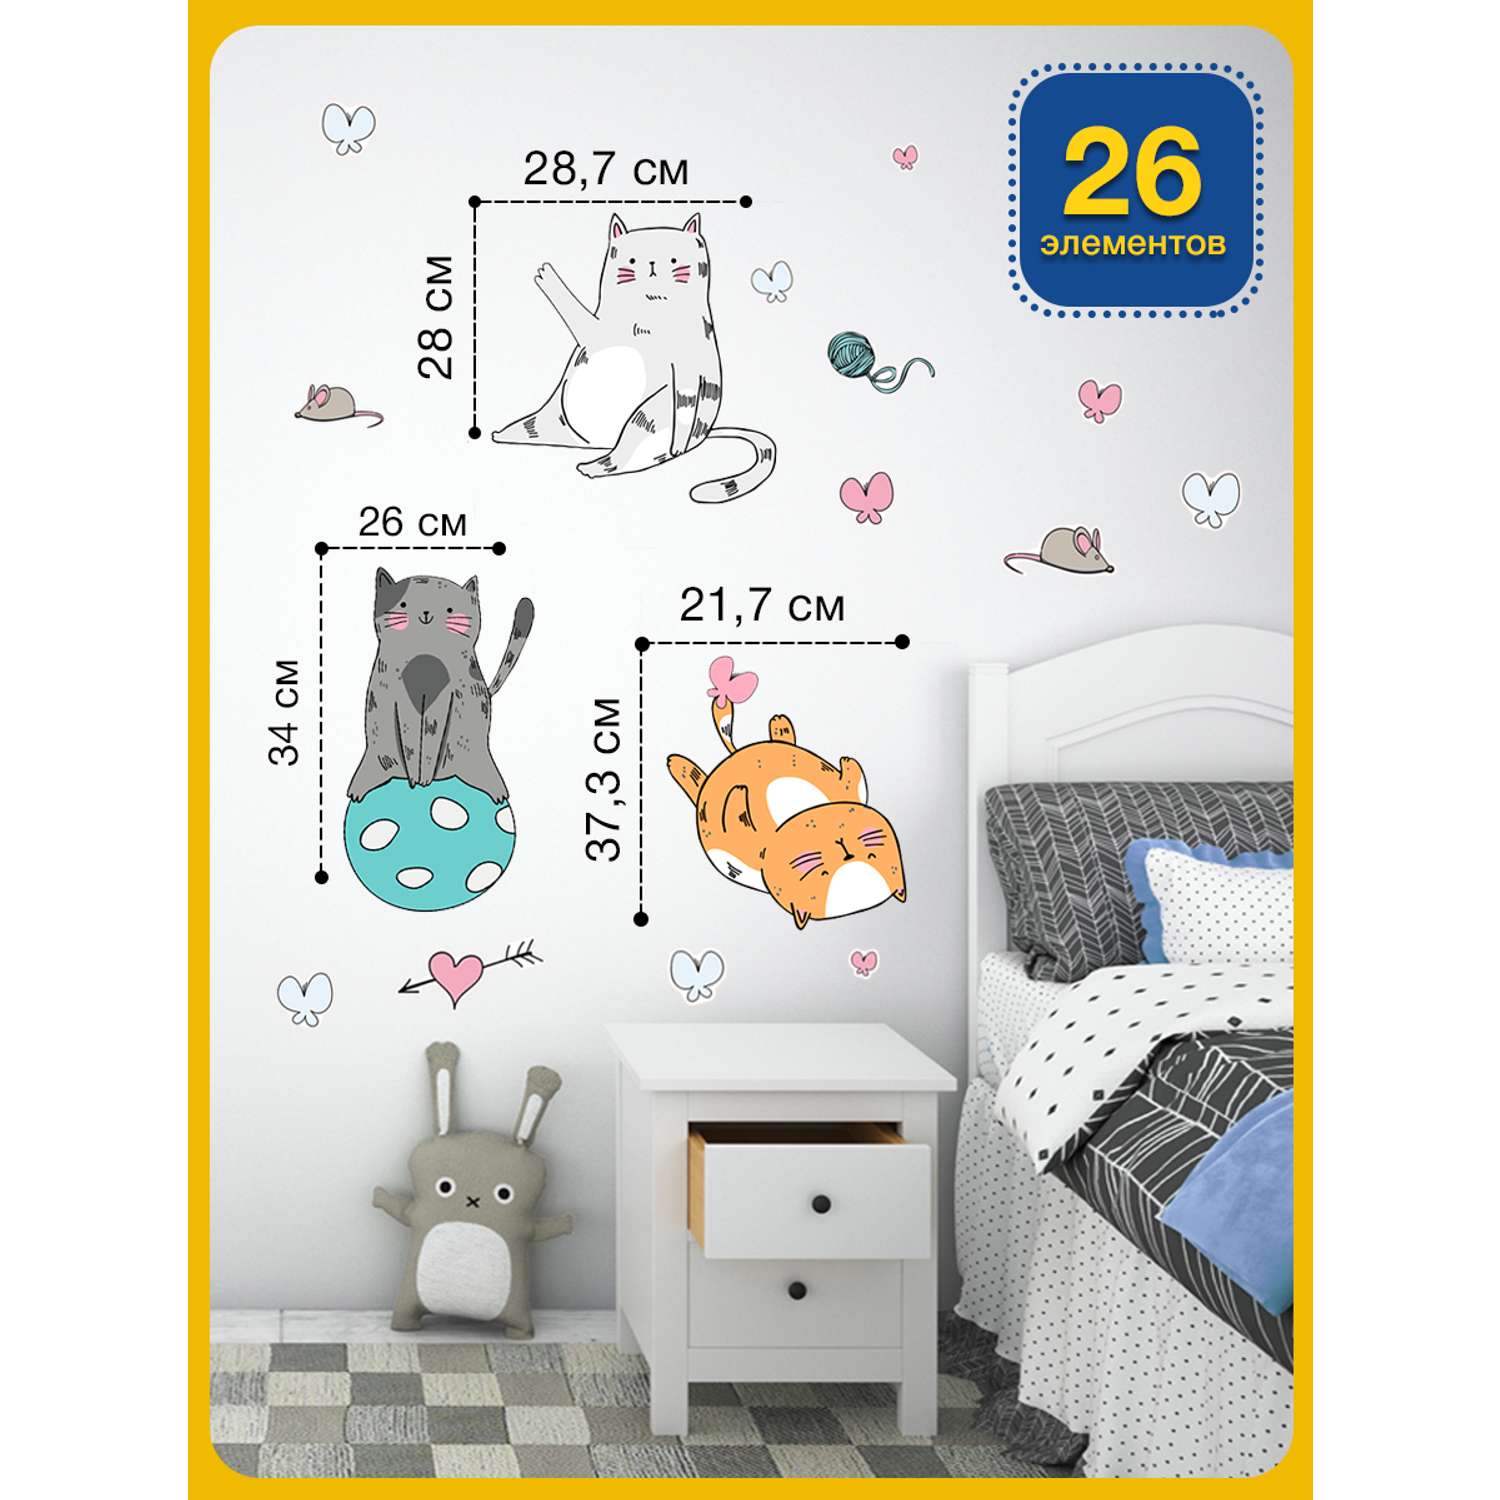 Наклейка оформительская ГК Горчаков на стену в детскую комнату с рисунком котики для декора - фото 3